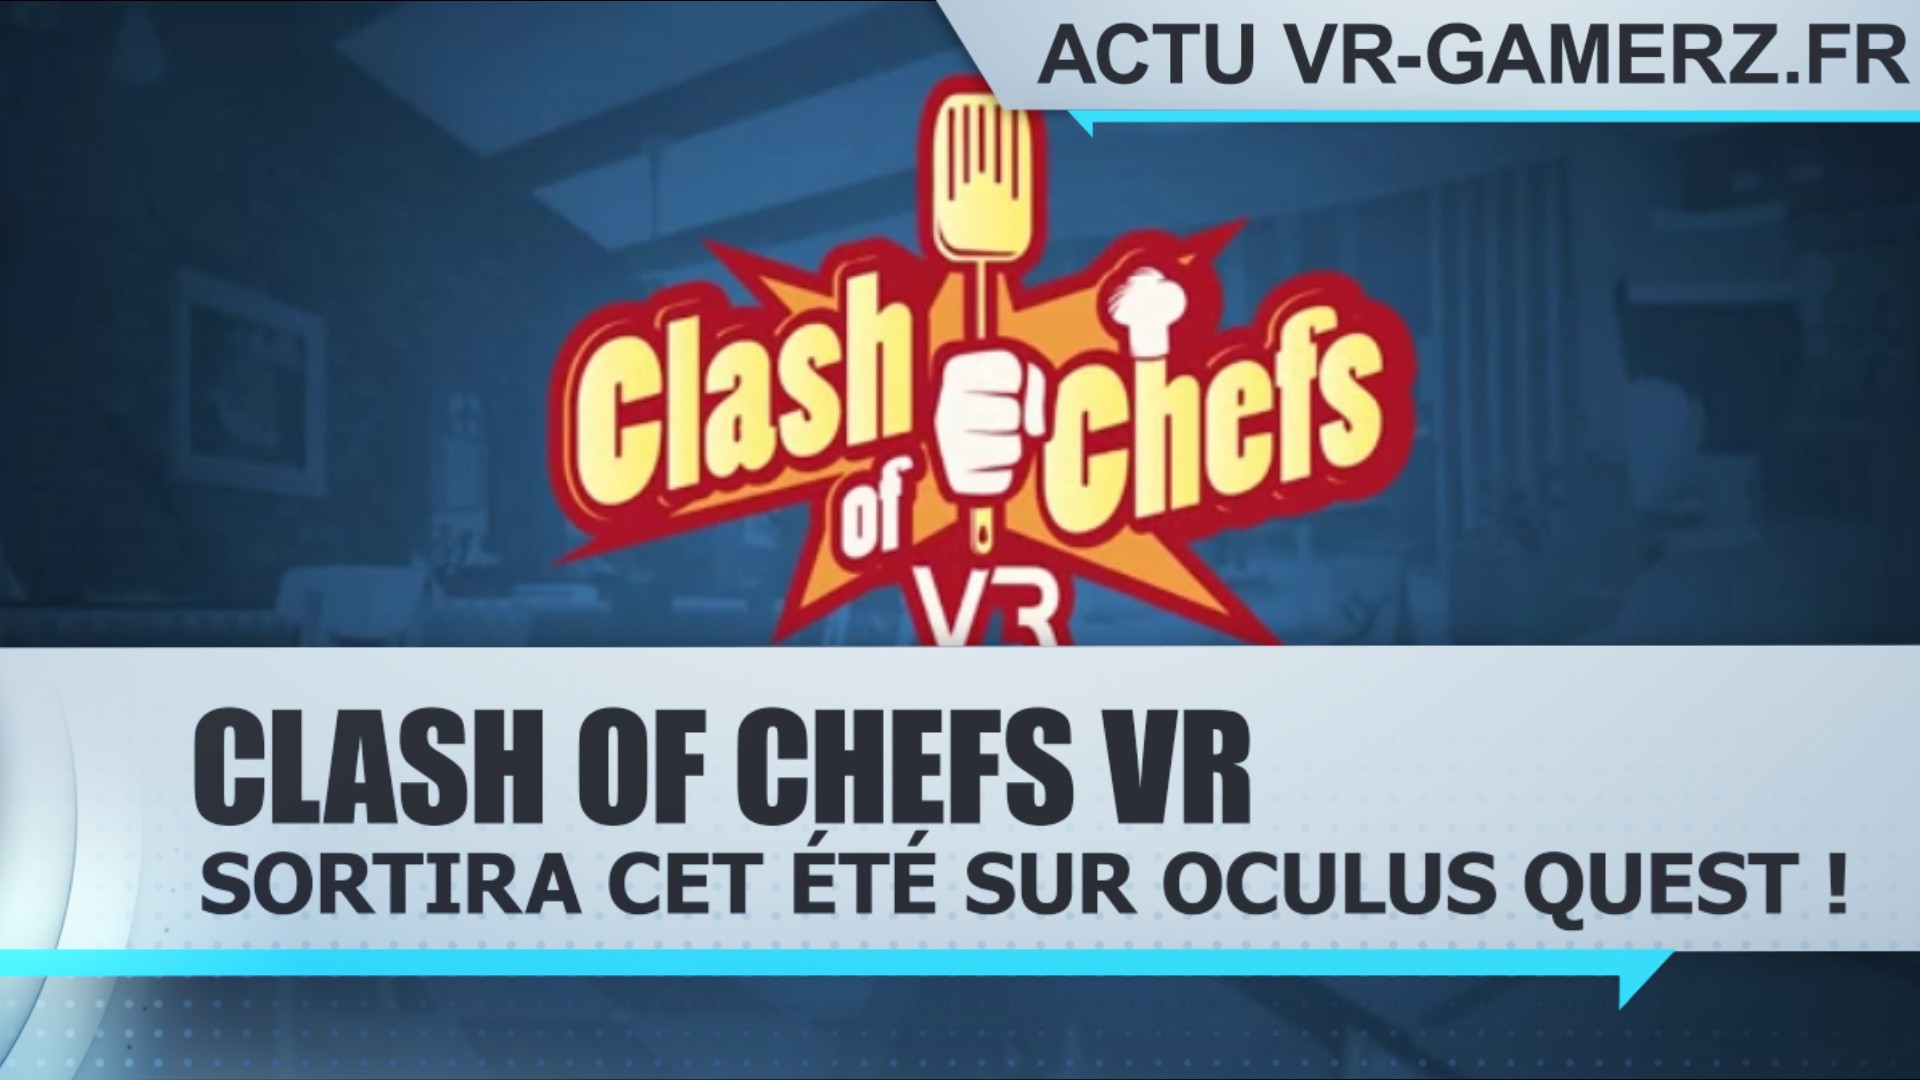 Clash of Chefs VR sortira cet été sur Oculus quest !